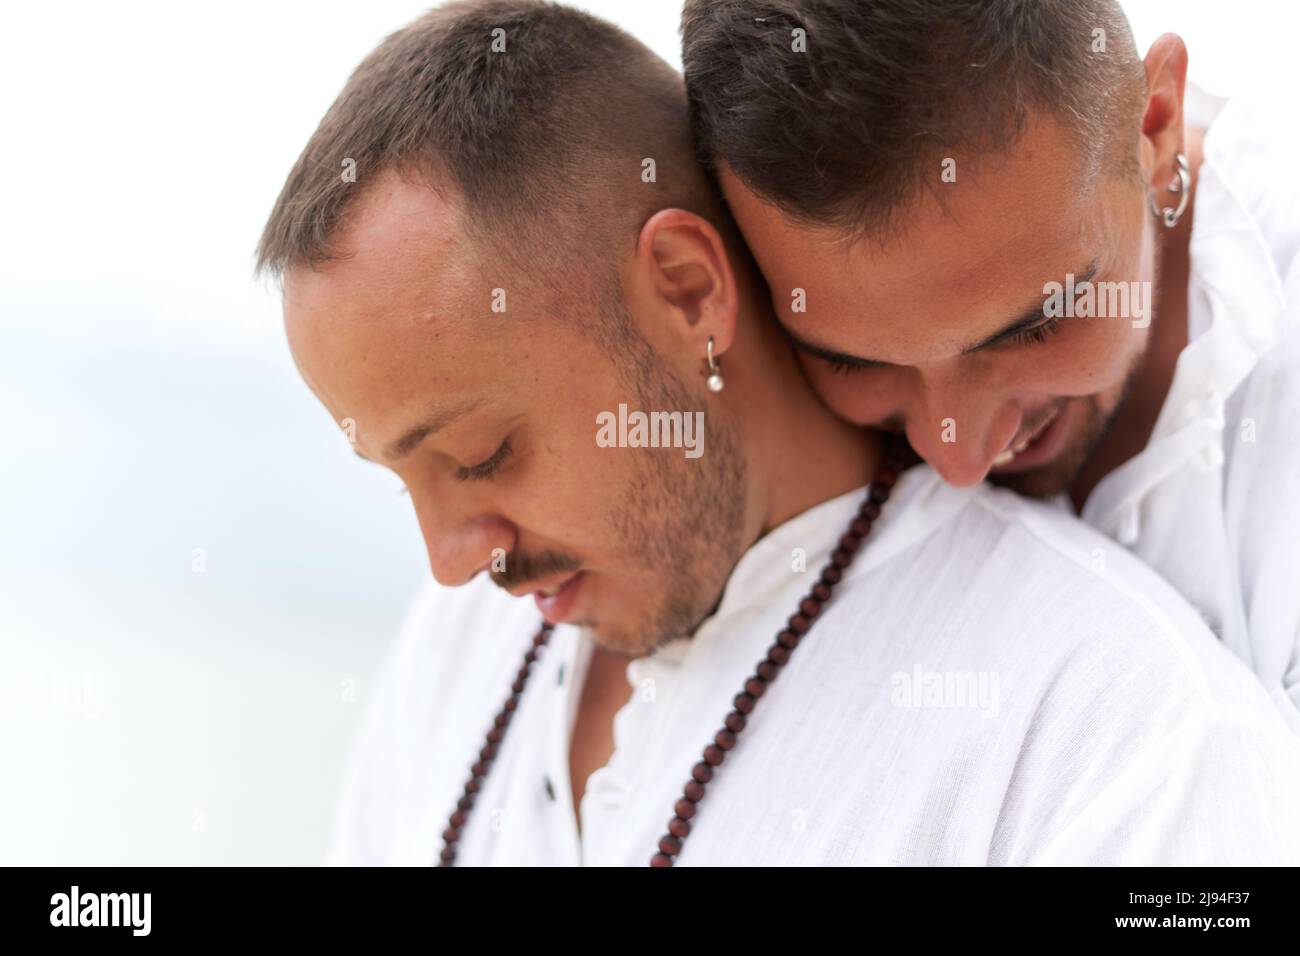 Porträt von zwei schwulen Männern in weißen Kleidern umarmt mit zärtlichen Ausdruck Stockfoto